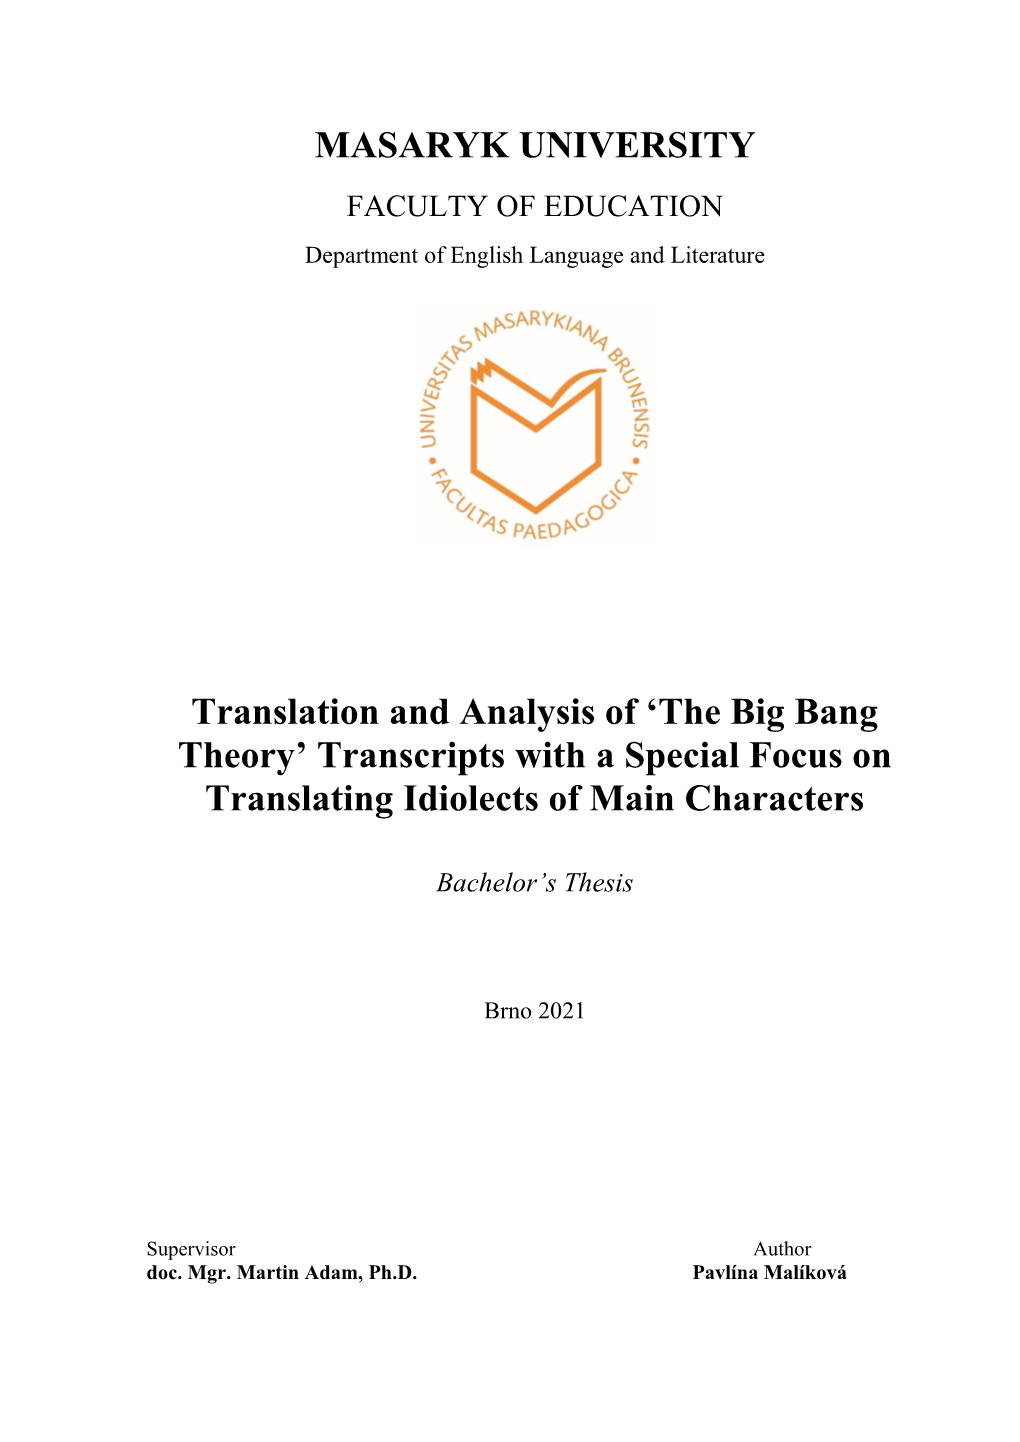 Translation and Analysis of 'The Big Bang Theory'